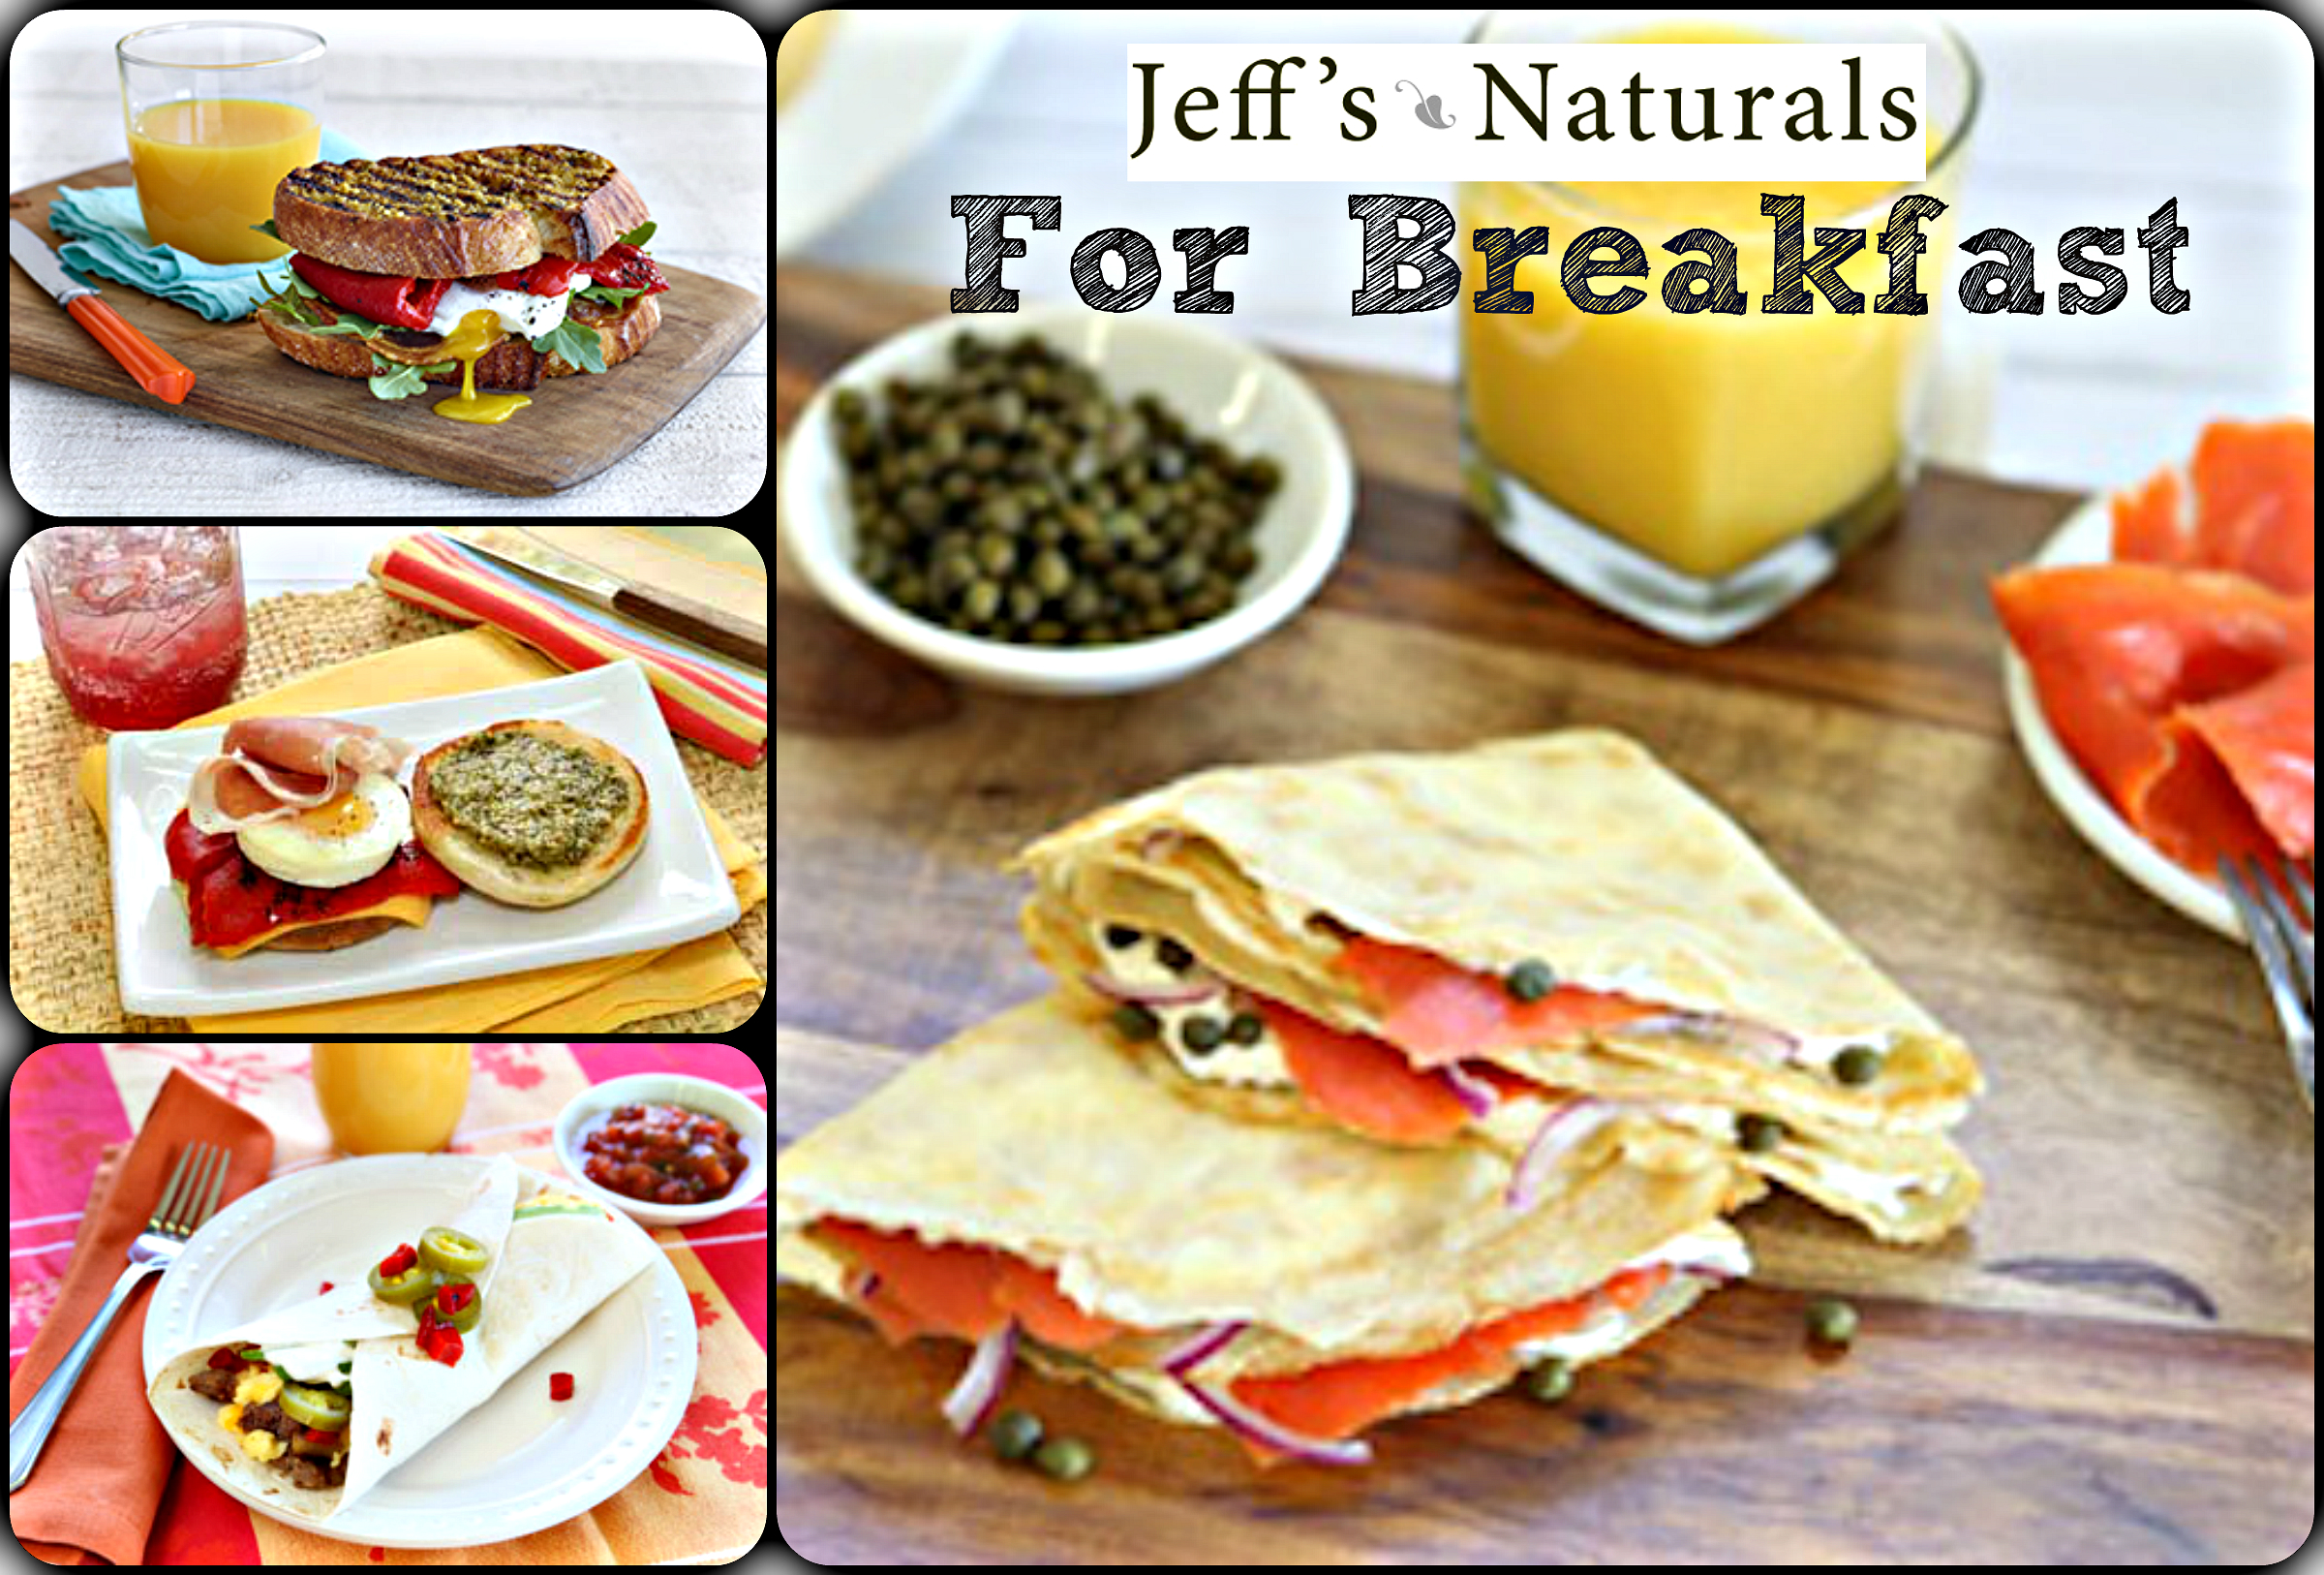 Jeff's Naturals for Breakfast